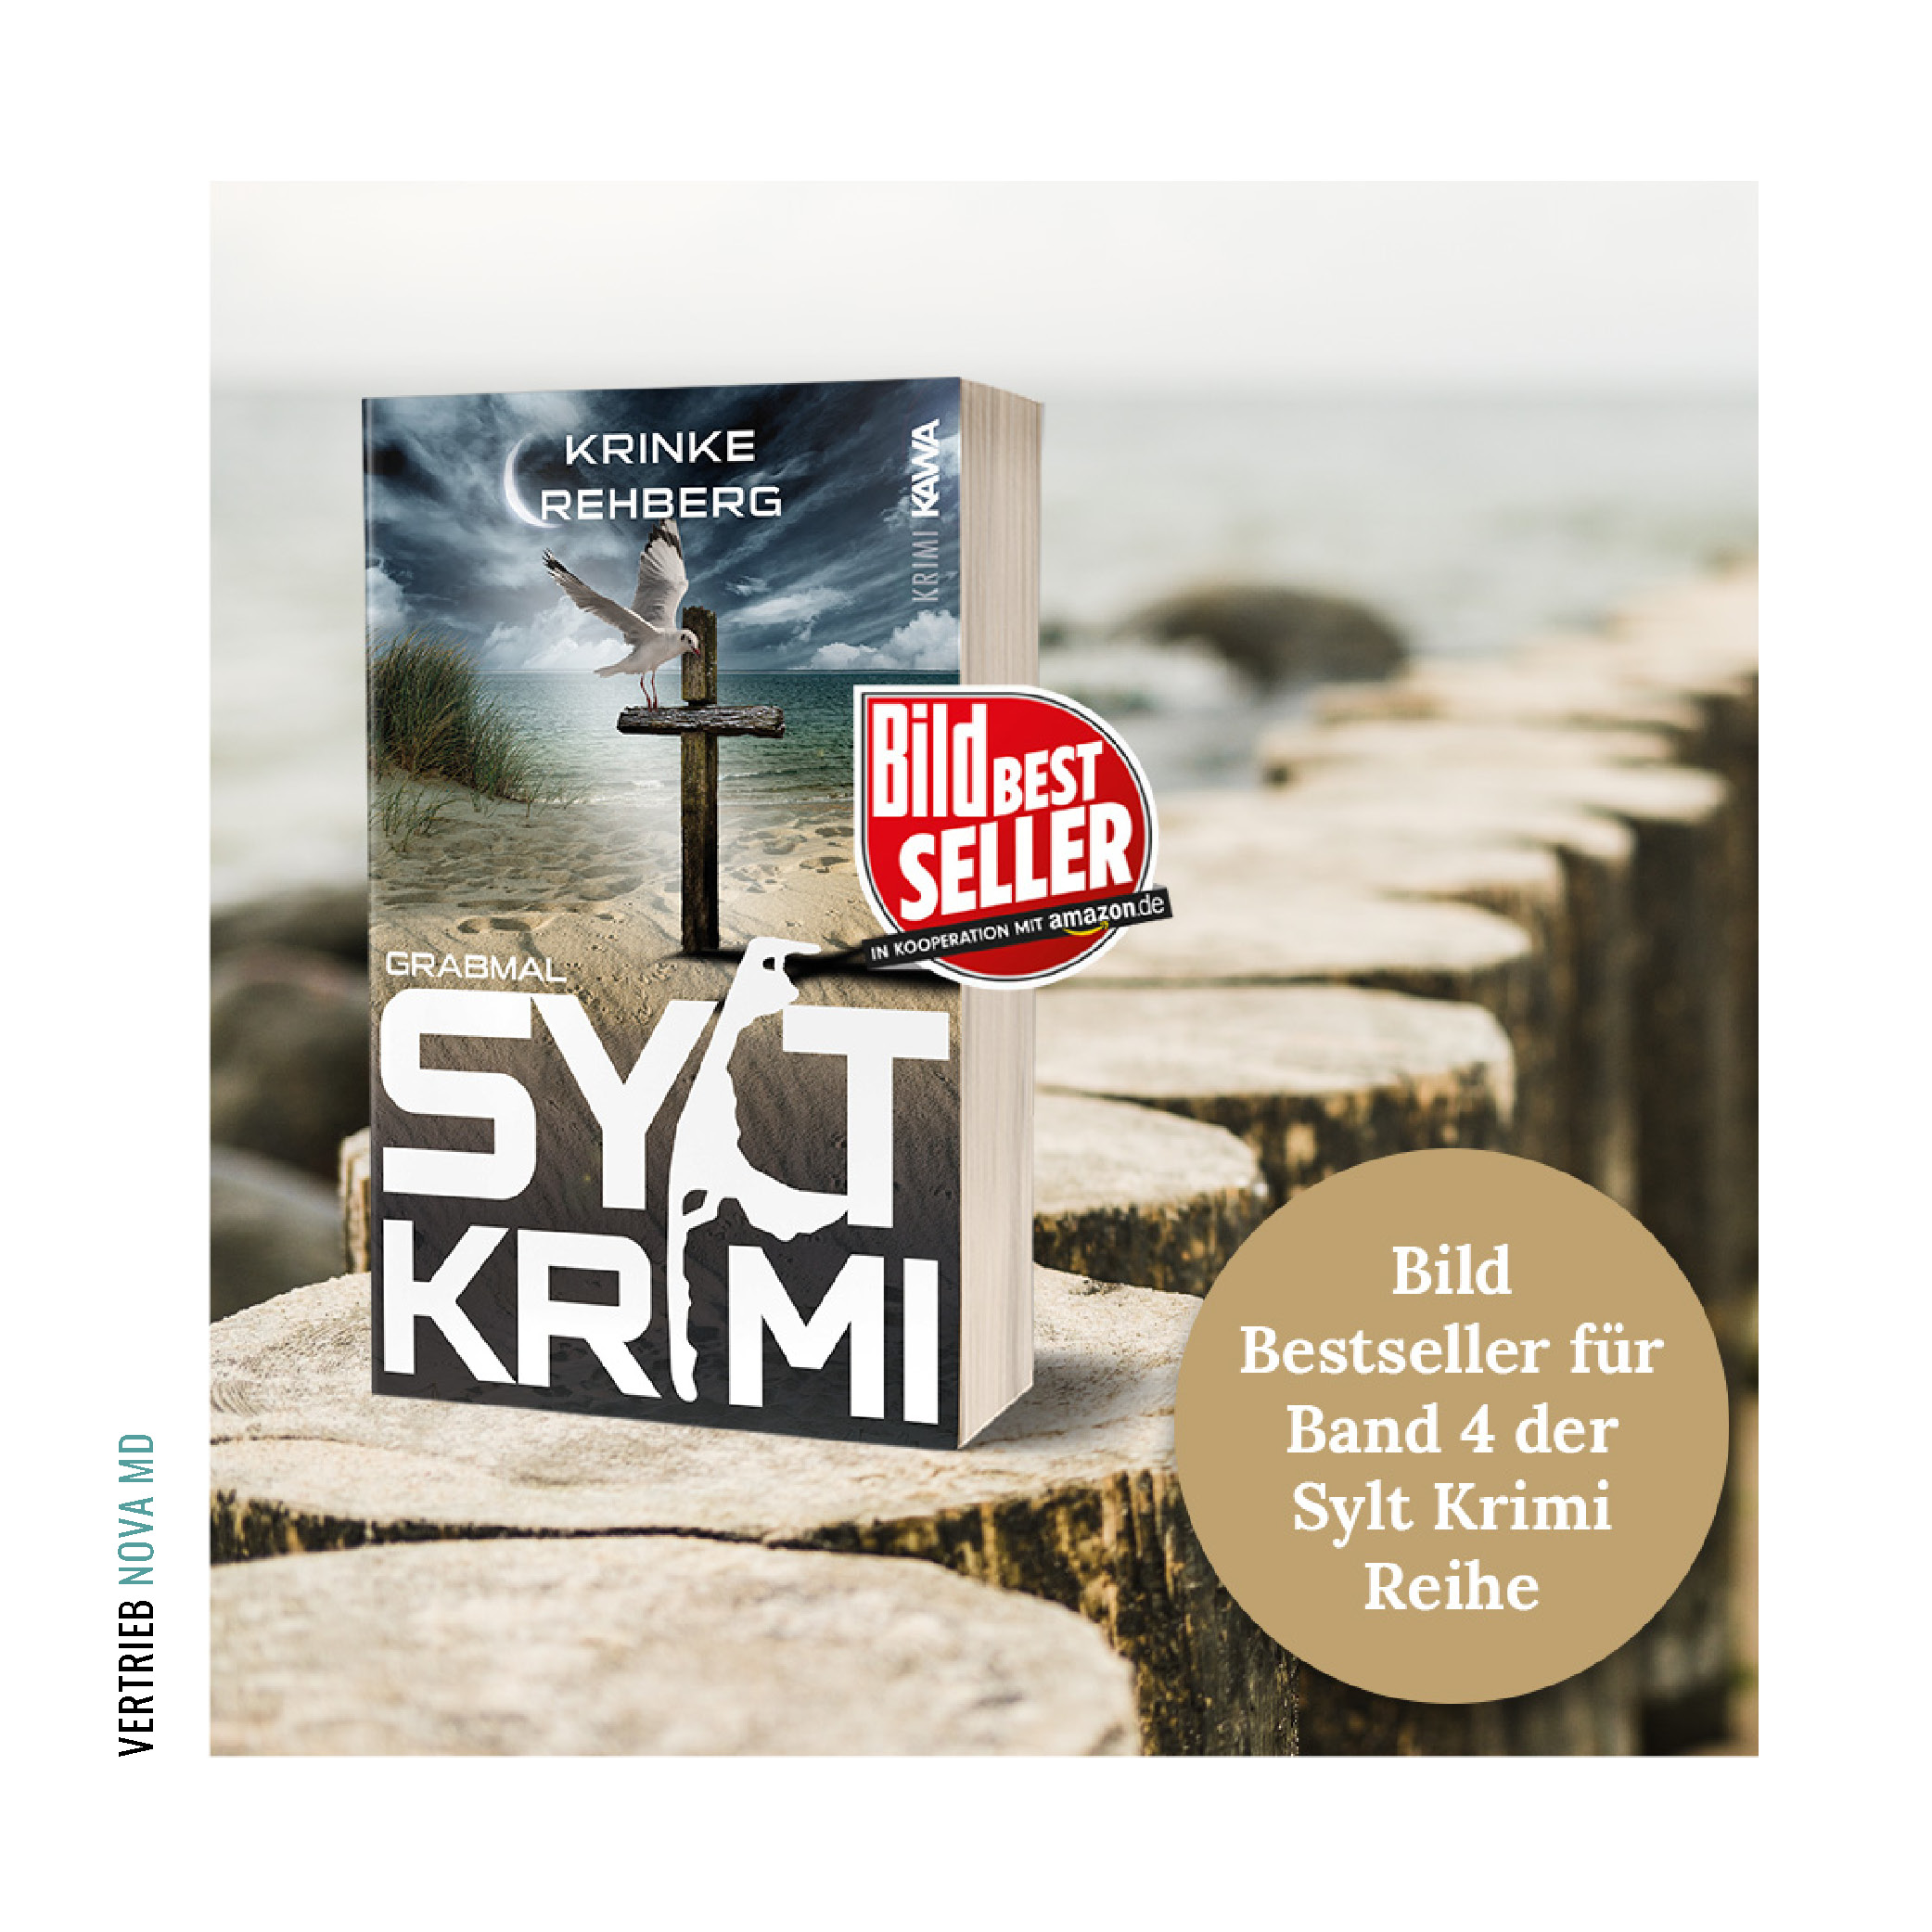 Buchcover "SYLTKRIMI Grabmal" mit Bildbestseller Auszeichnung